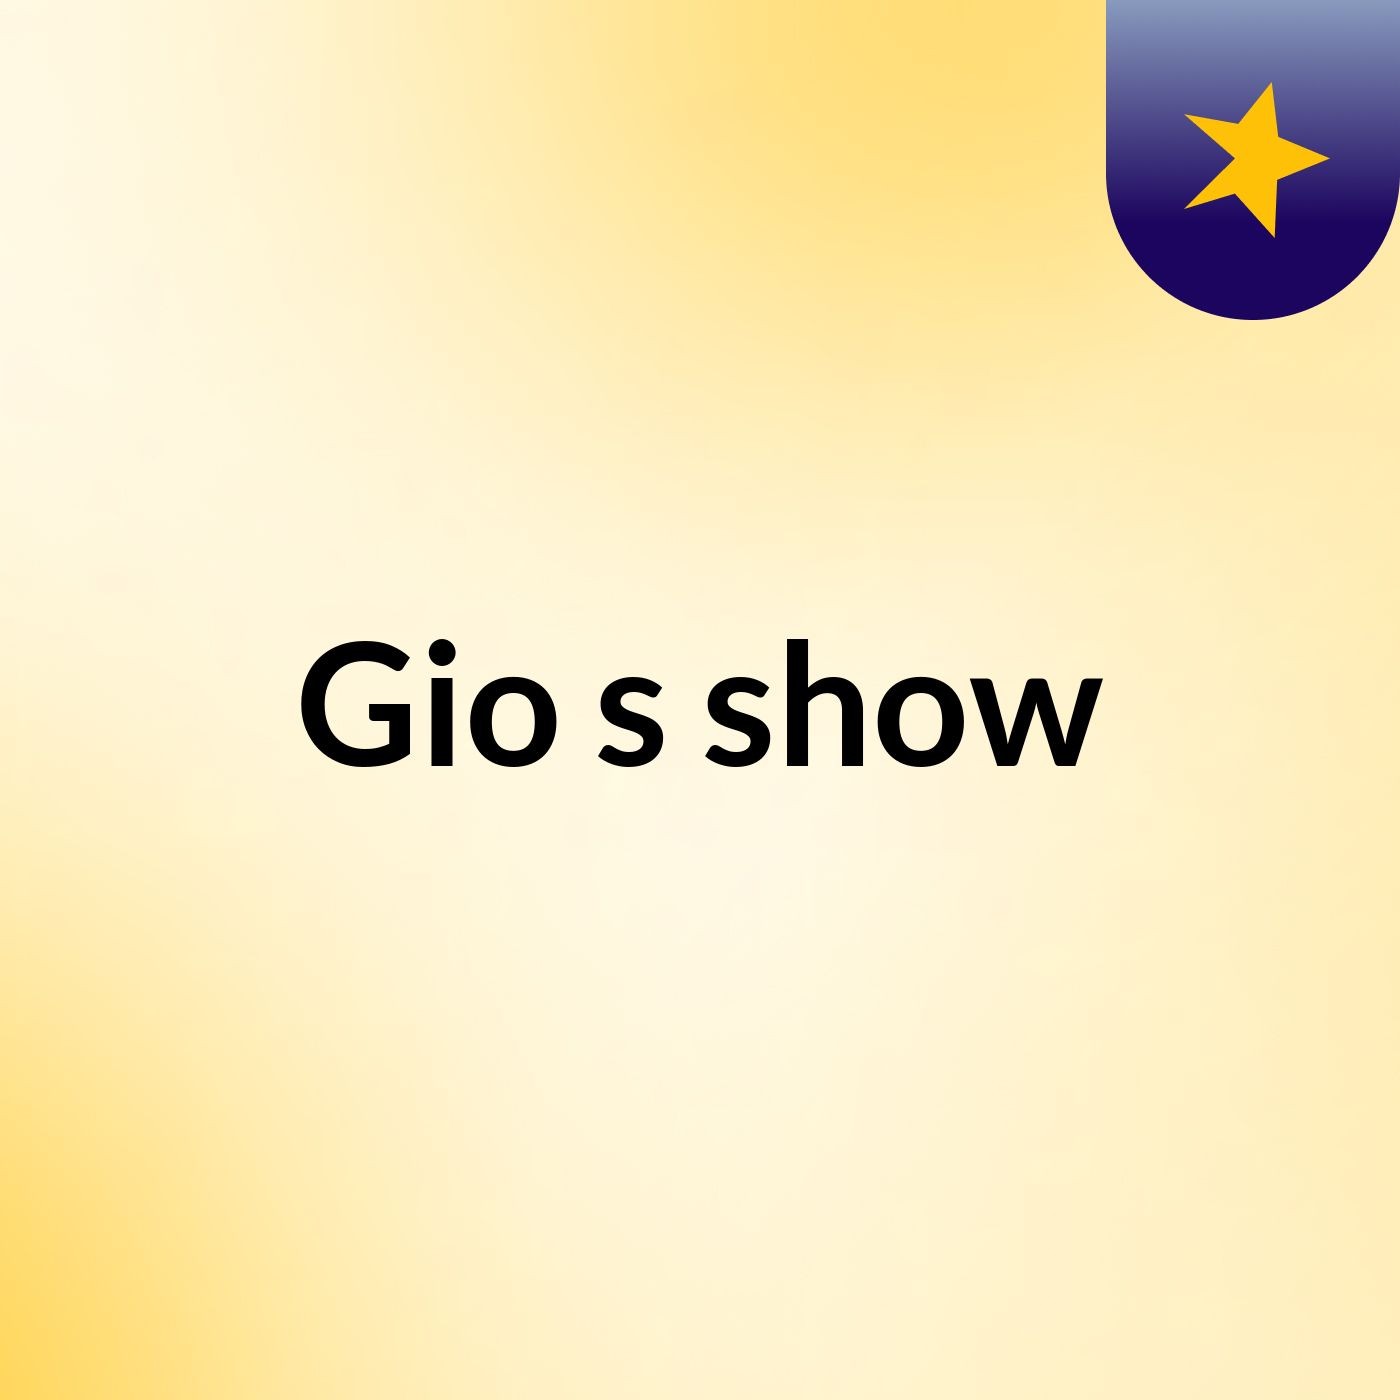 Gio's show